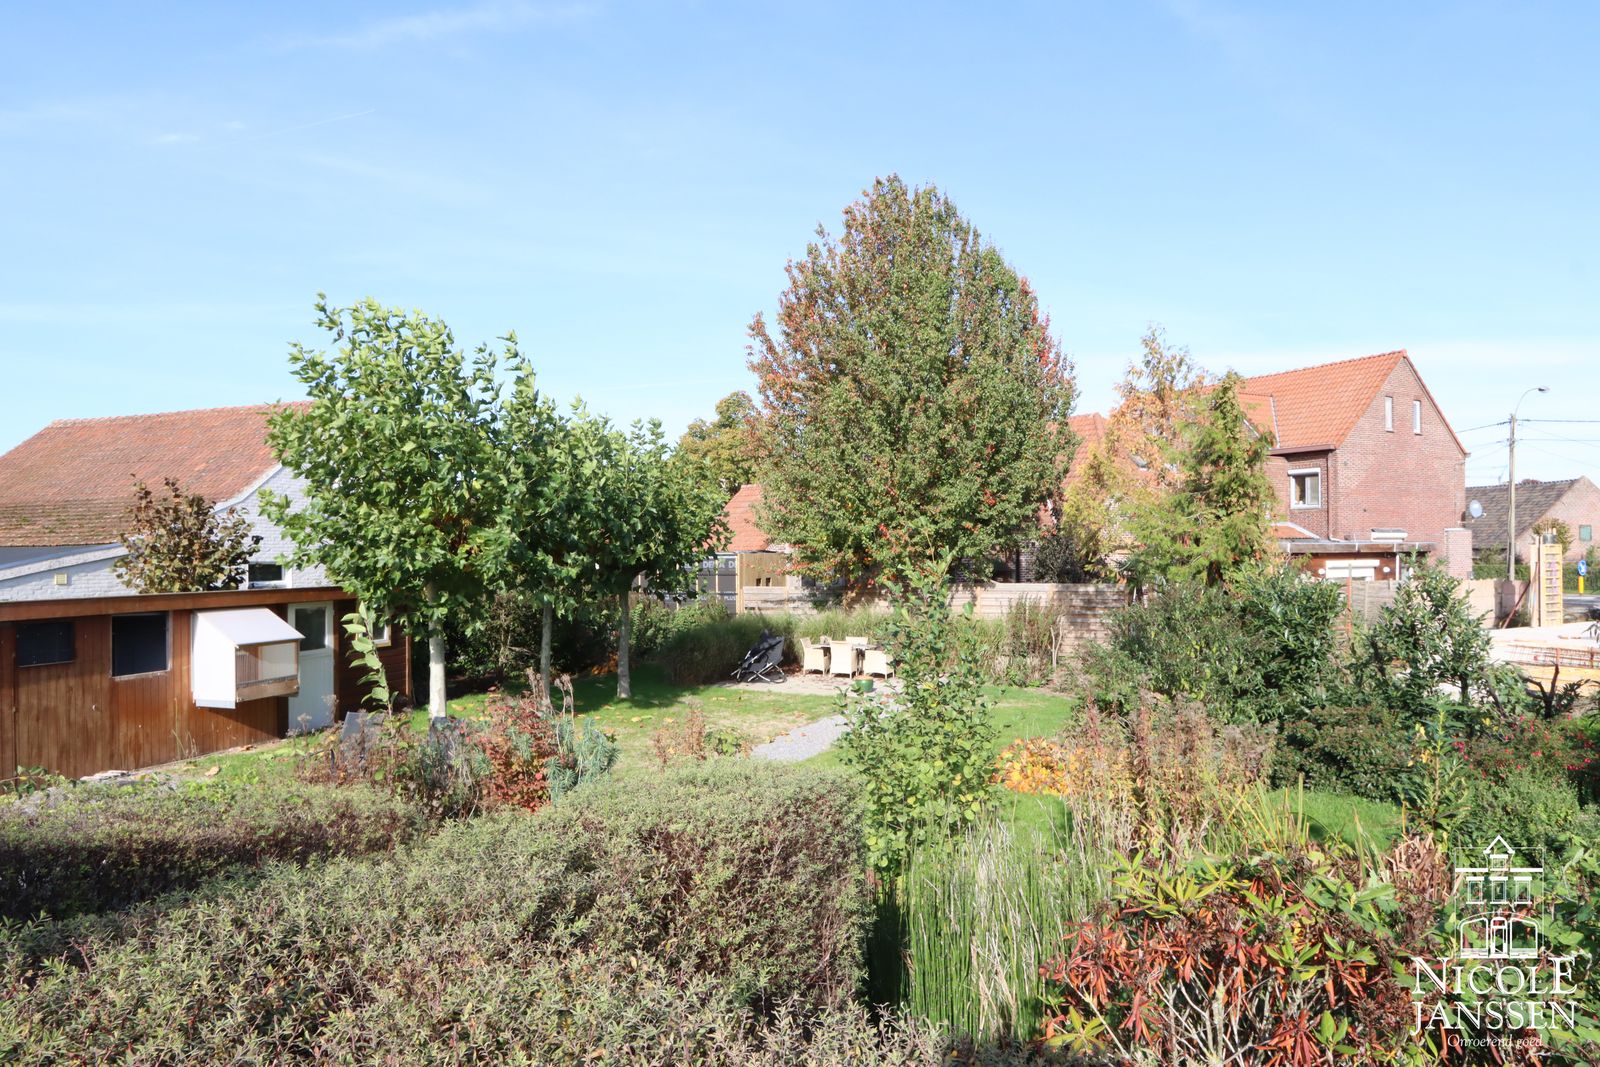 30 Nicole Janssen huis te koop Molenbeersel Venderstraat 5D (zicht tuin).jpg